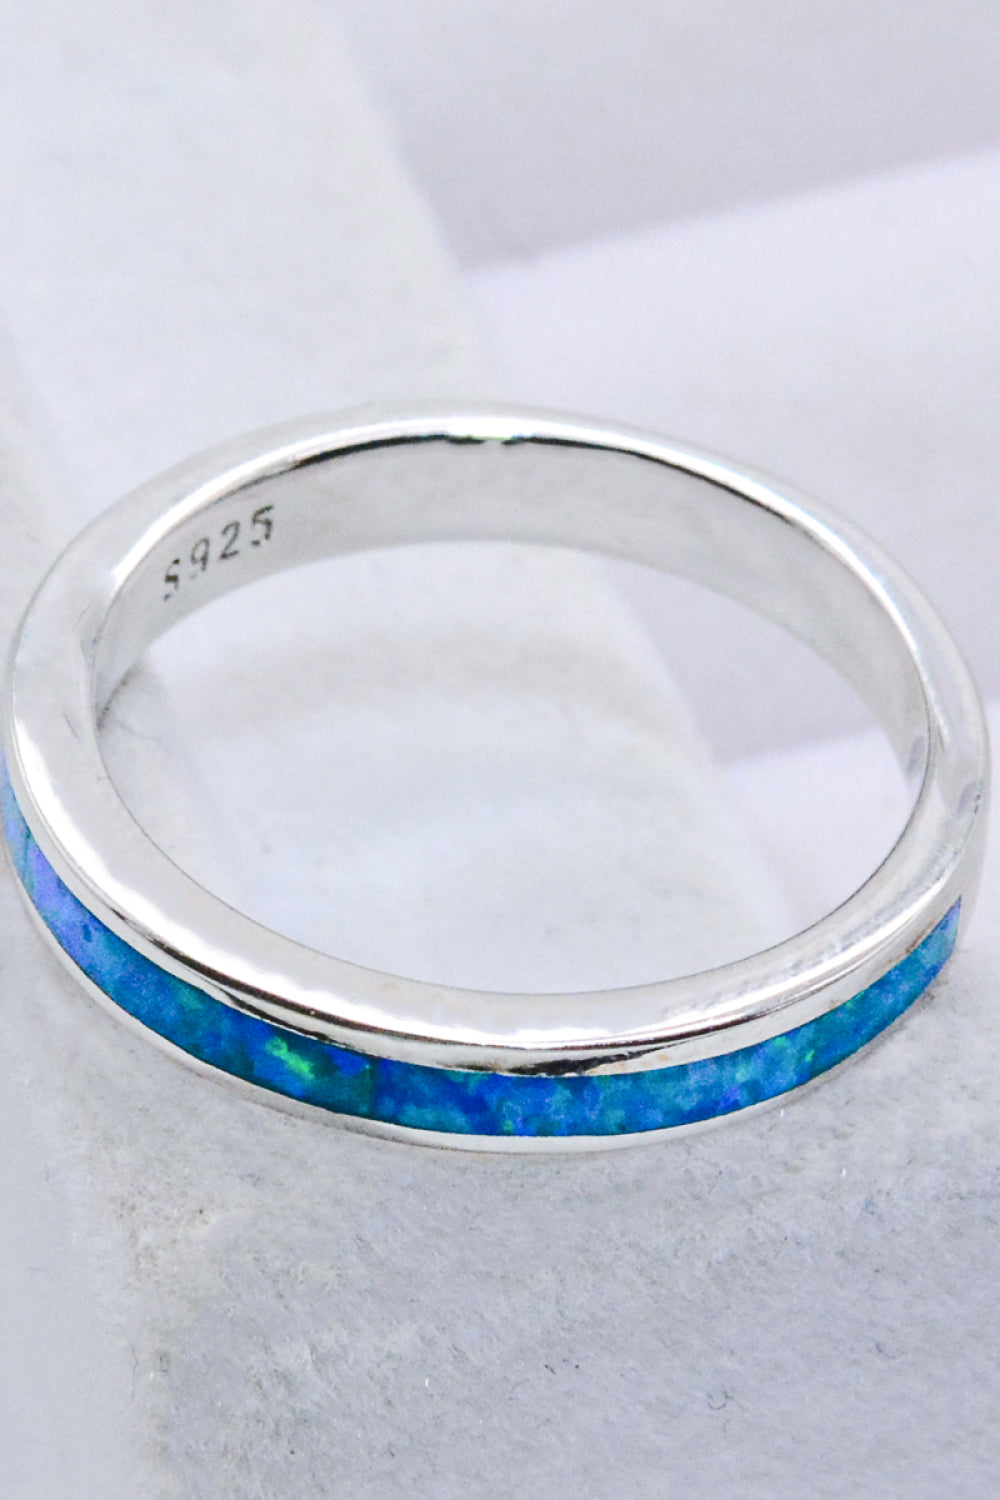 Women’s 925 Sterling Silver Opal Ring in Sky Blue